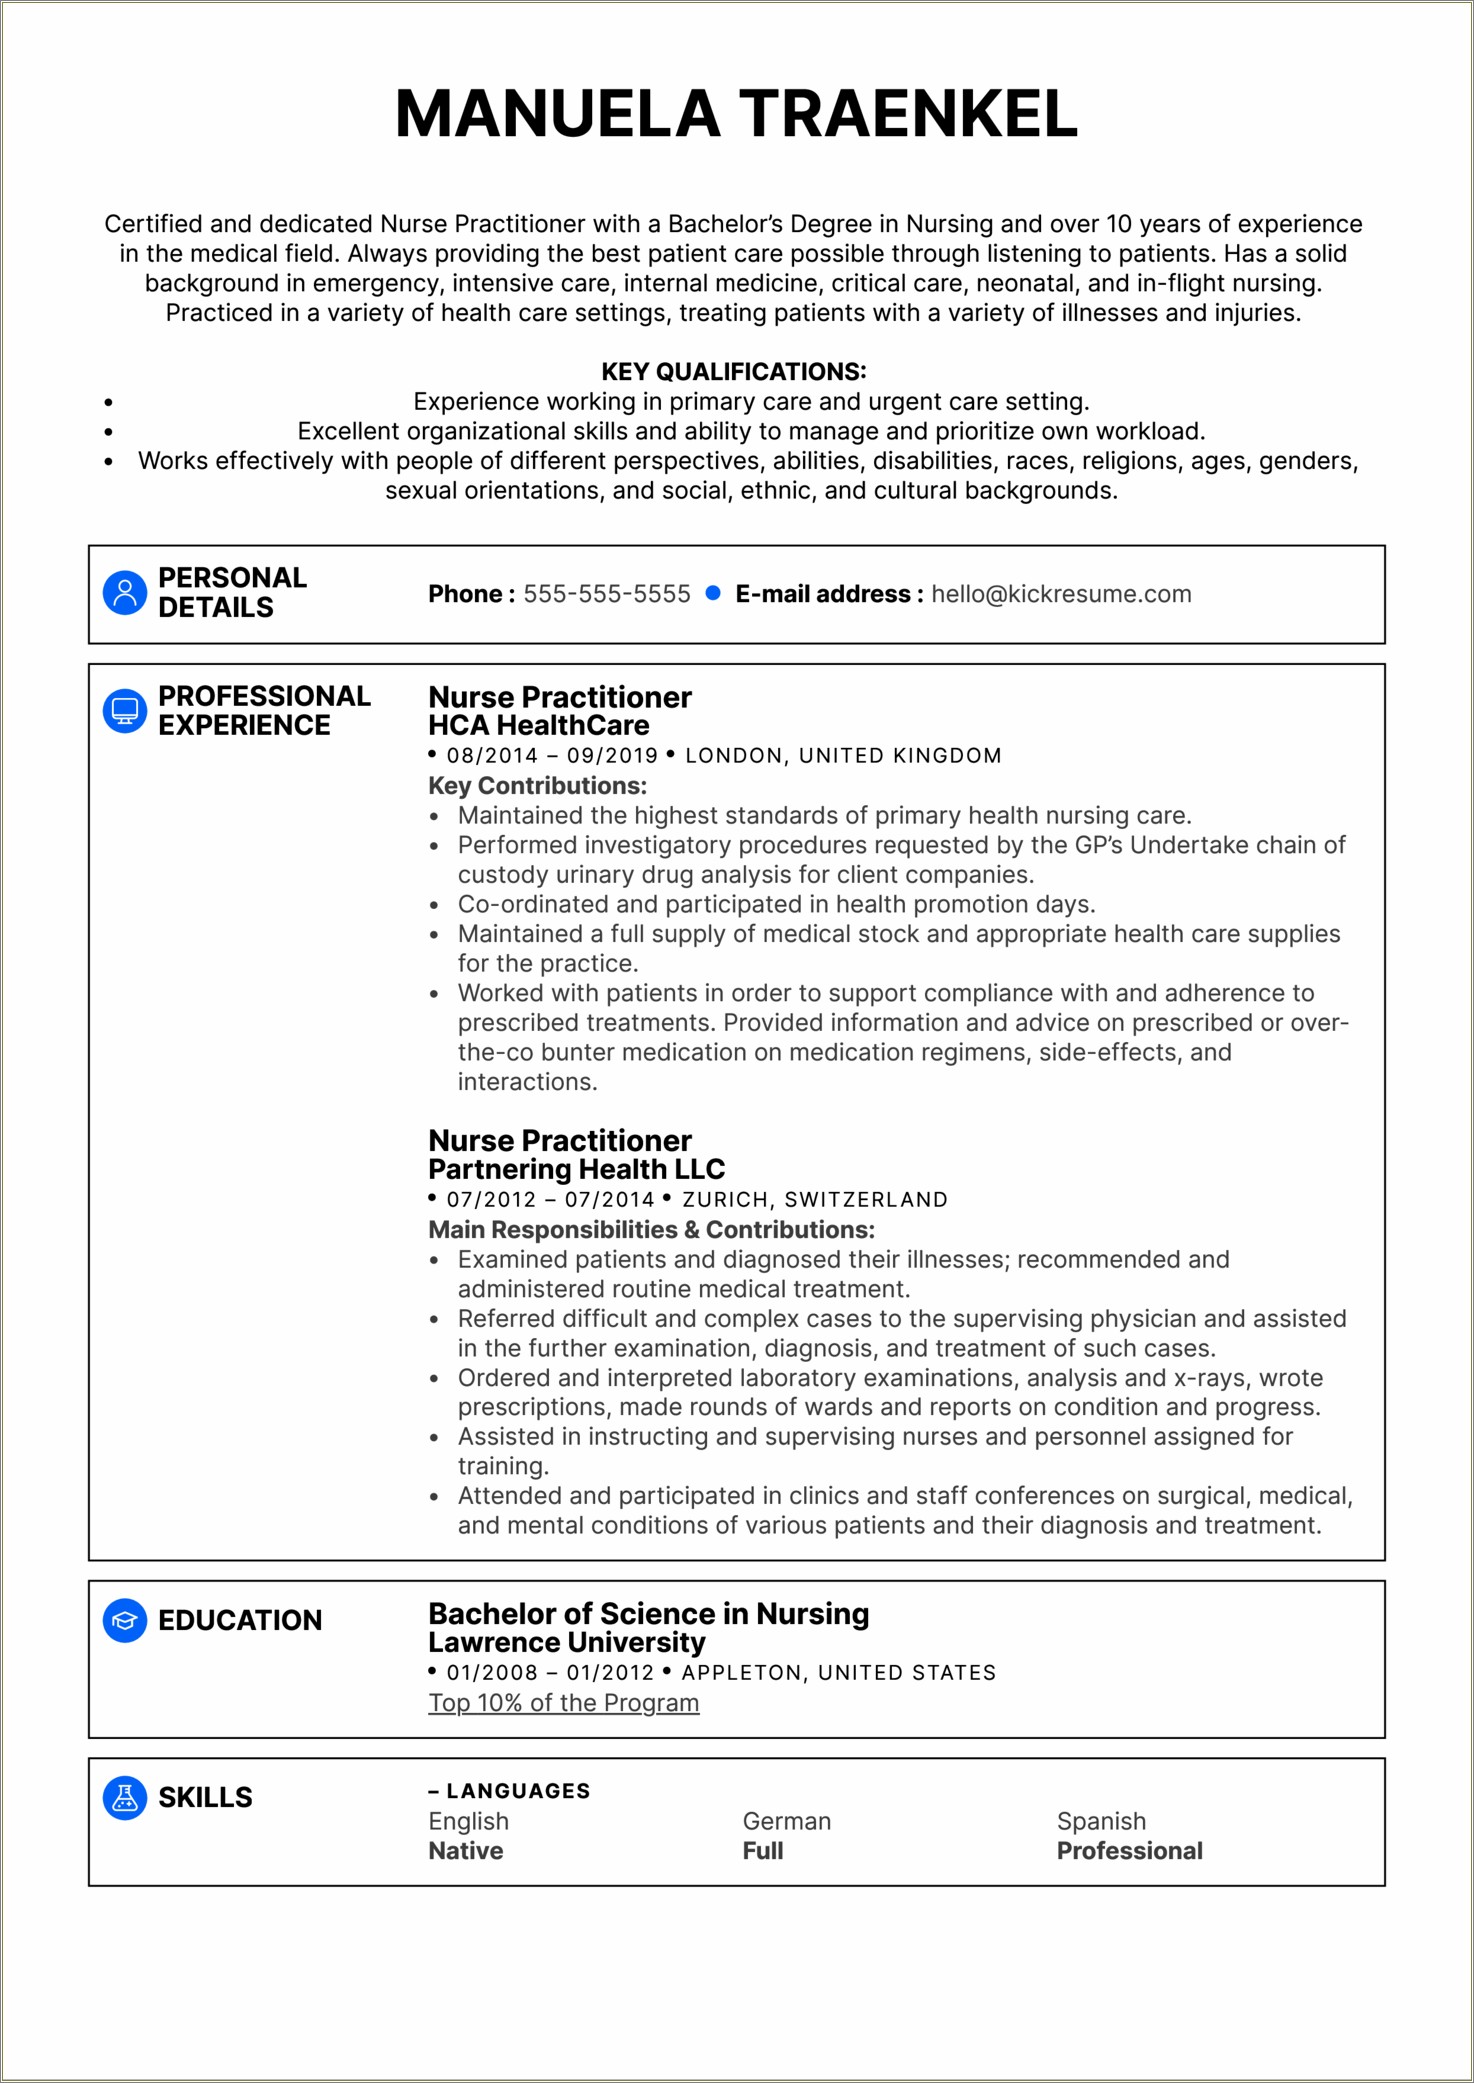 Resume For Icu Nurse Job Description